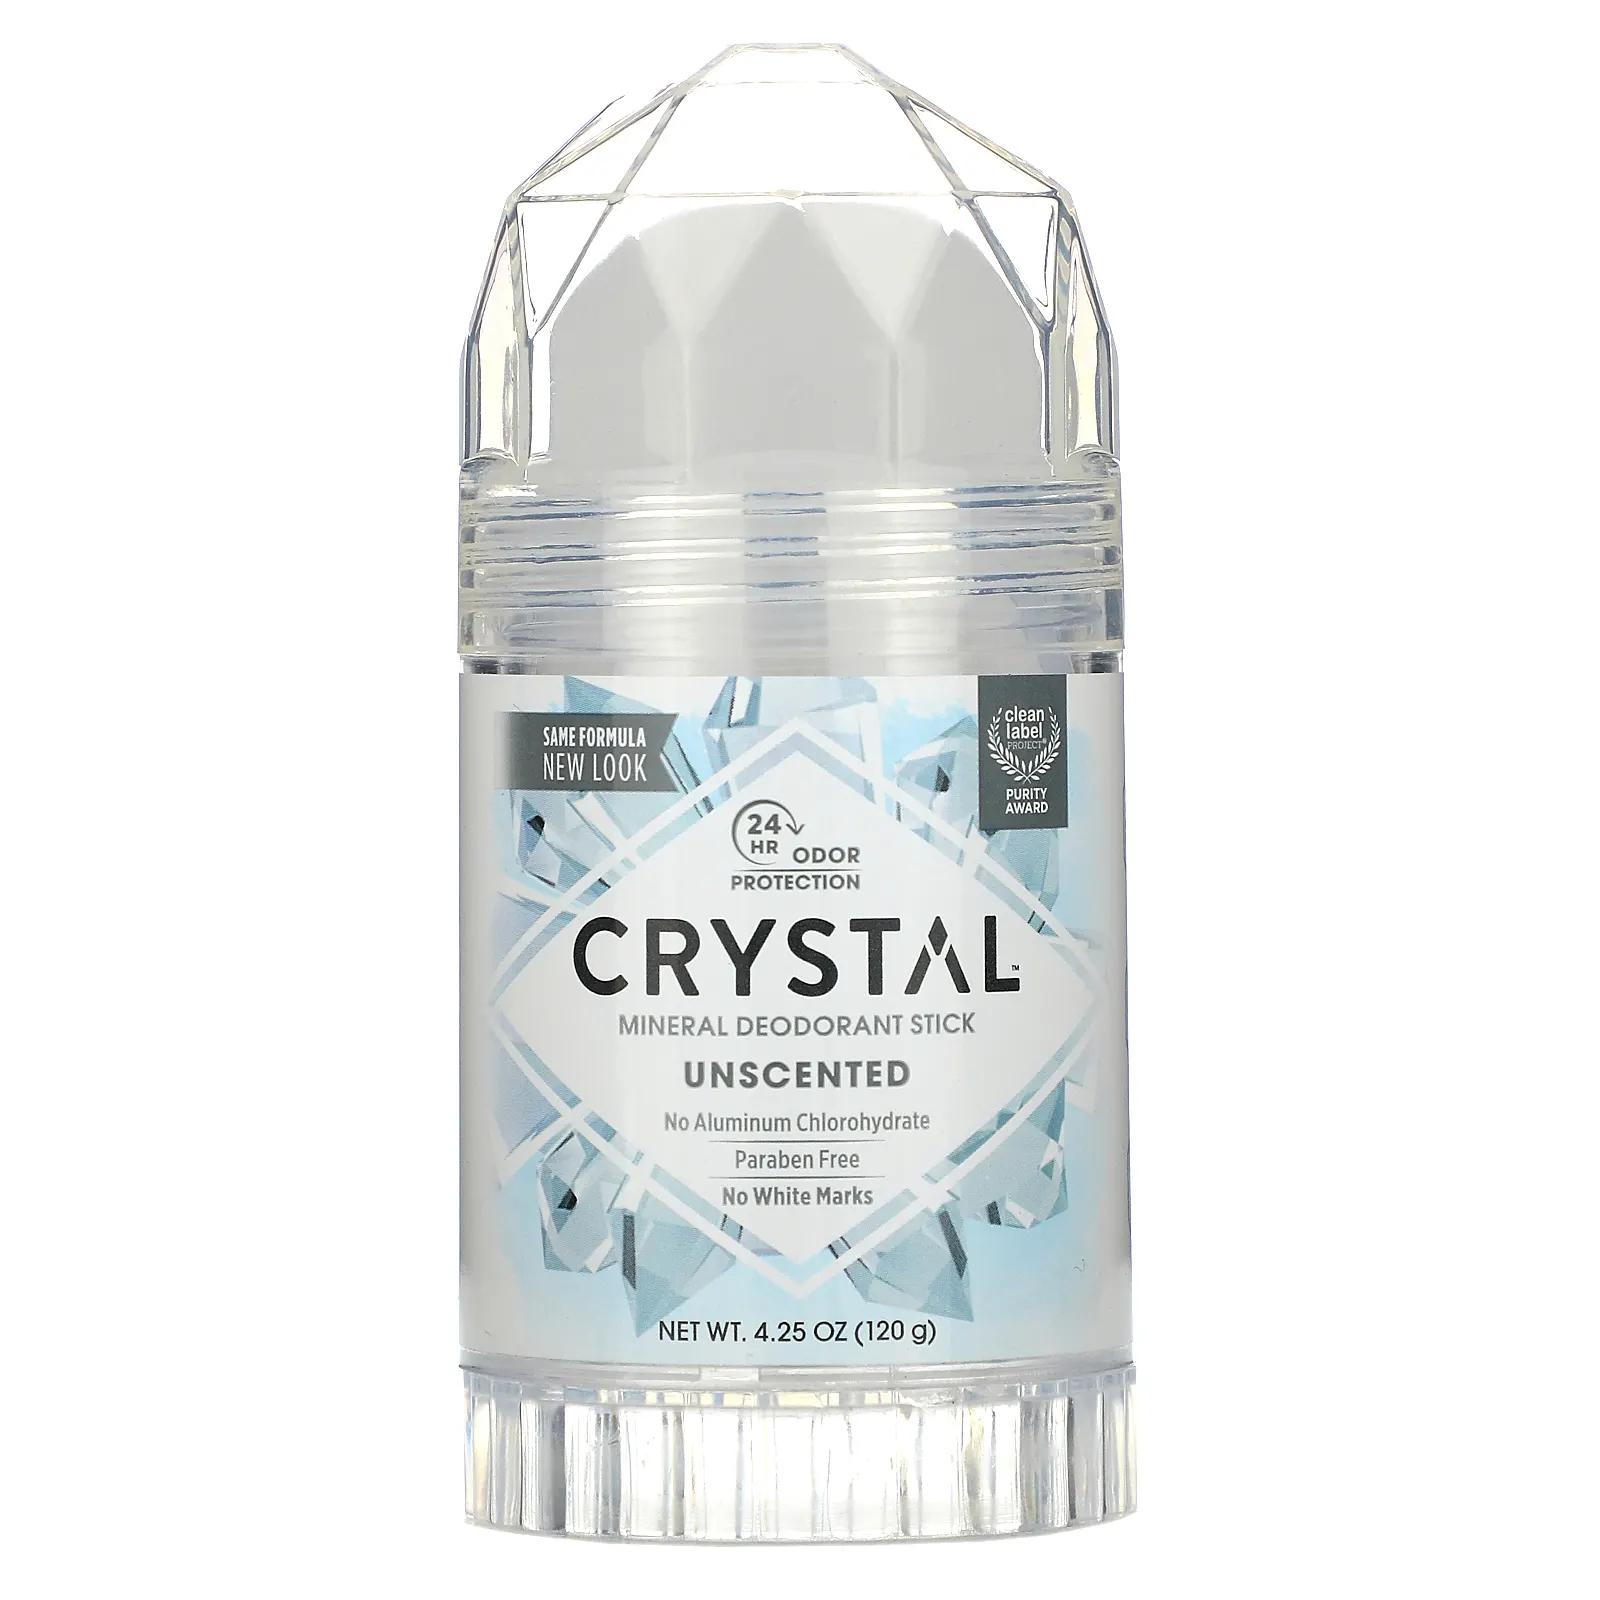 Crystal Body Deodorant Минеральный твердый дезодорант Без запаха 4,25 унц. (120 г) crystal body deodorant минеральный шариковый дезодорант без запаха 66 мл 2 25 жидк унции